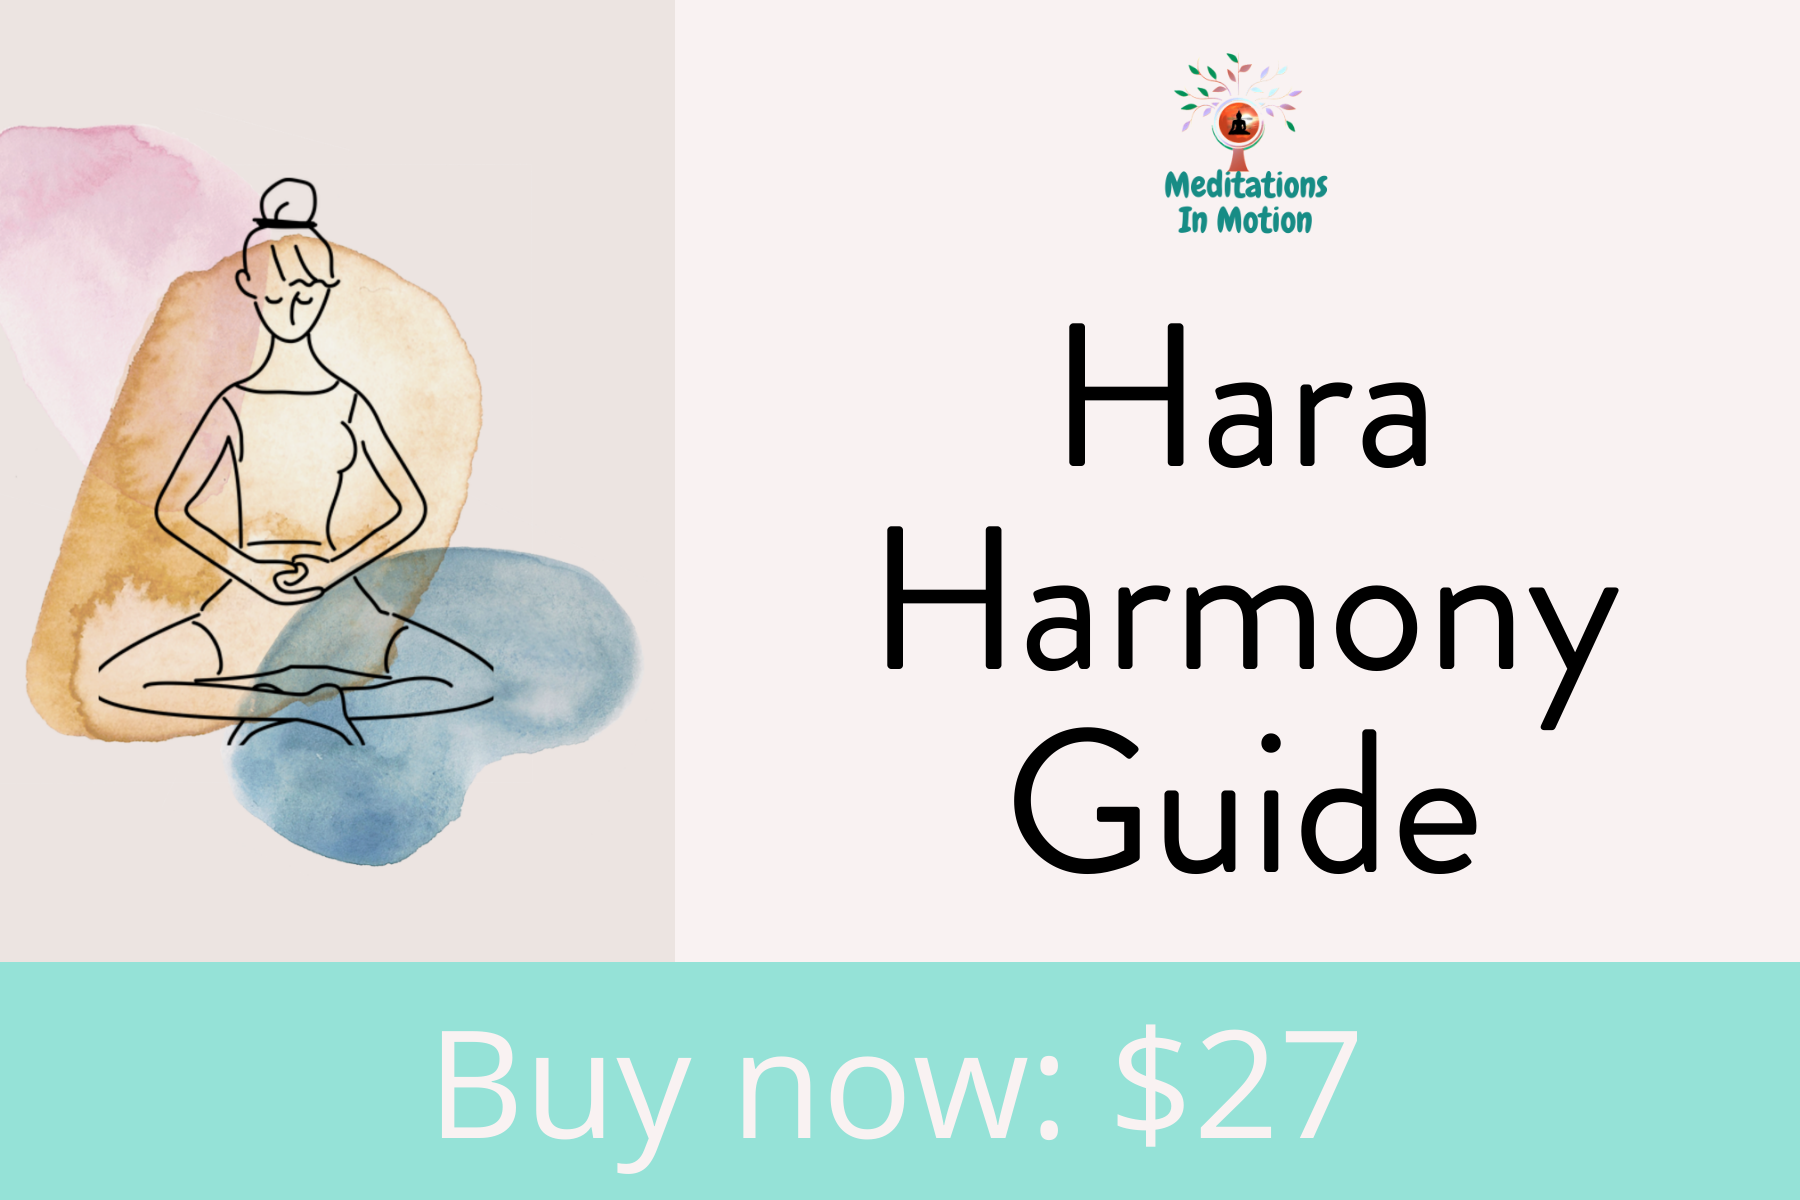 Hara Harmony Guide $27